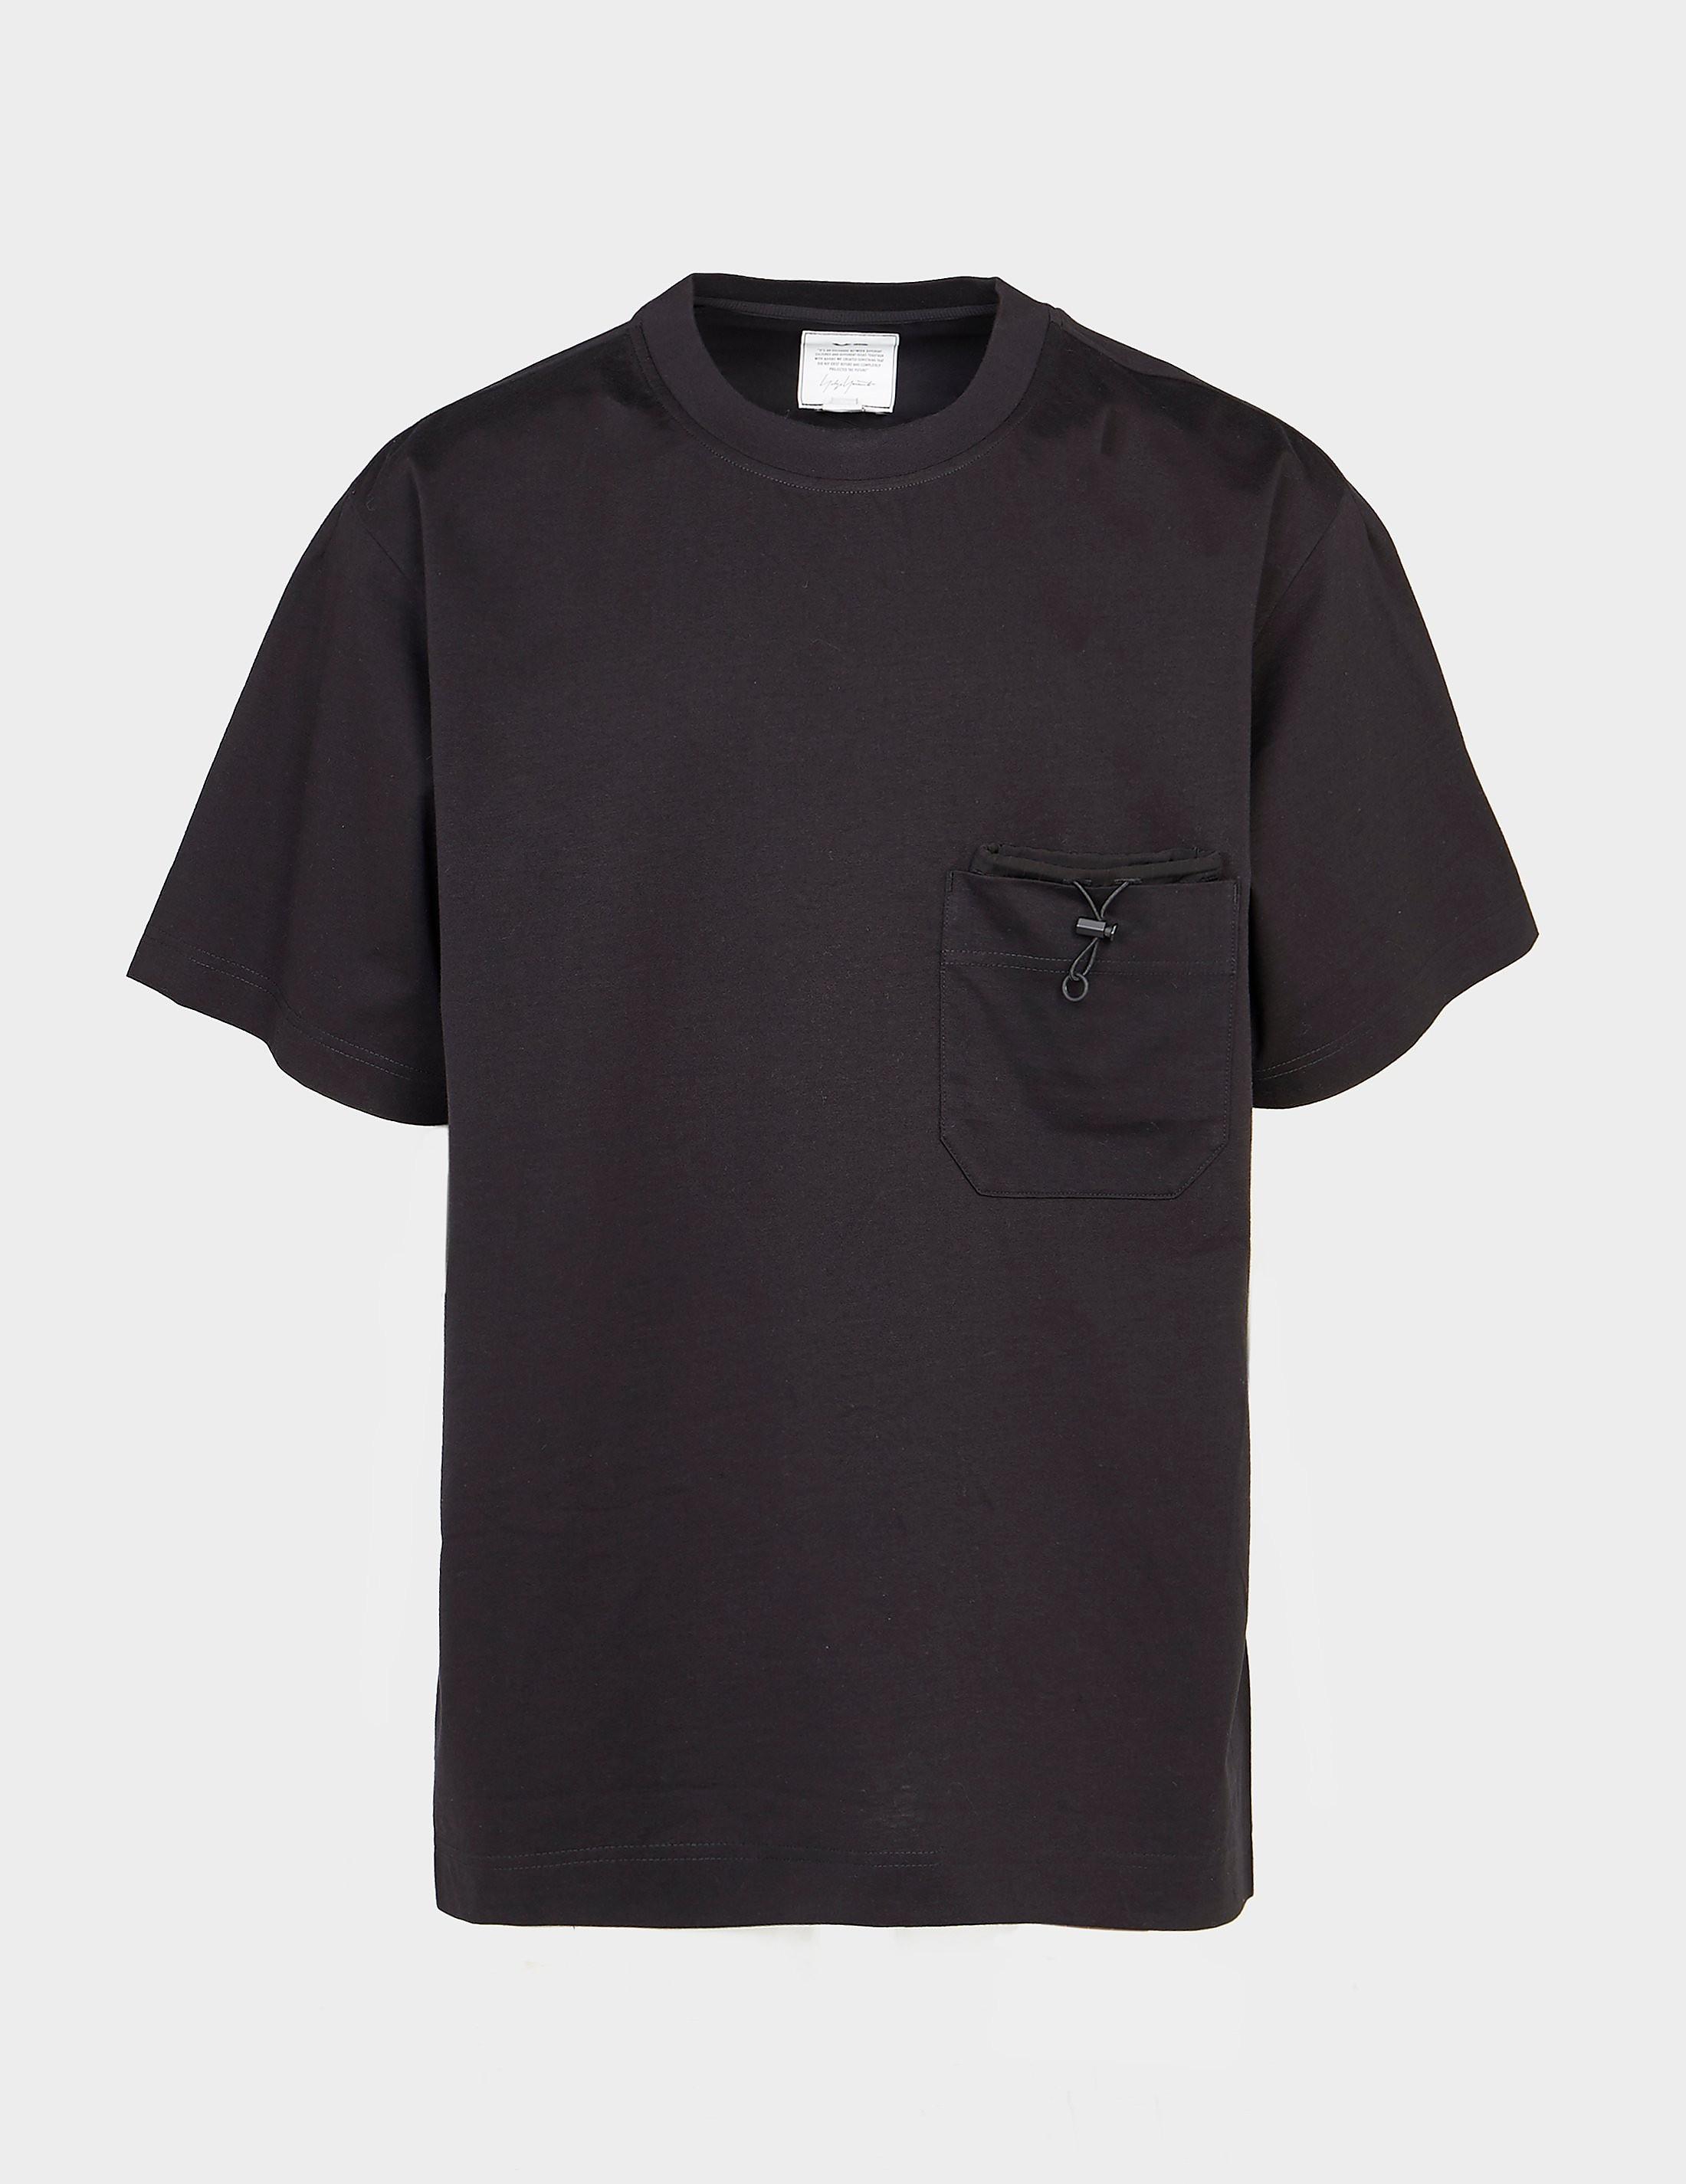 Y-3 Paper Pocket T-shirt in Black for Men - Lyst